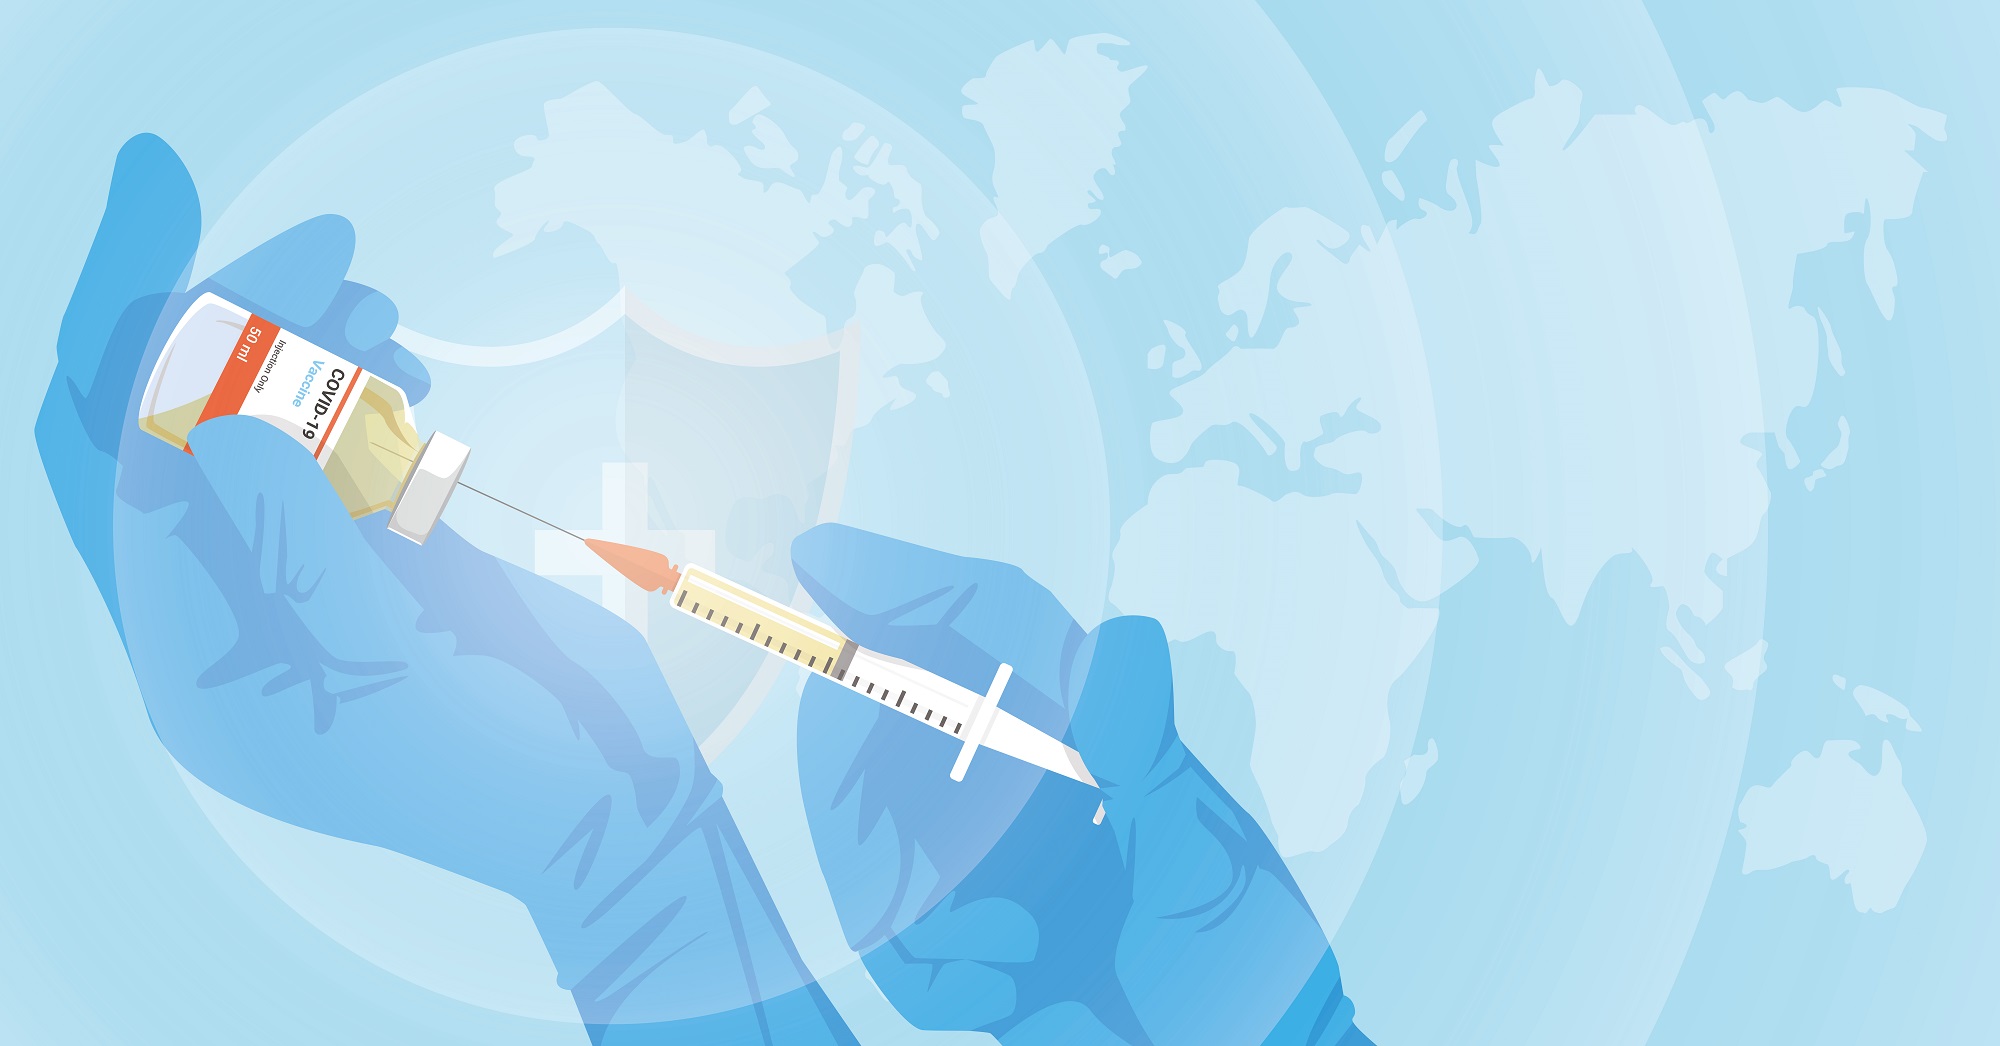 Hände mit medizinischen Gummihandschuhen ziehen den flüssigen Impfstoff einer COVID-19-Impfung von einem Behältnis in eine Spritze. Im Hintergrund ist eine Weltkarte zu sehen. 